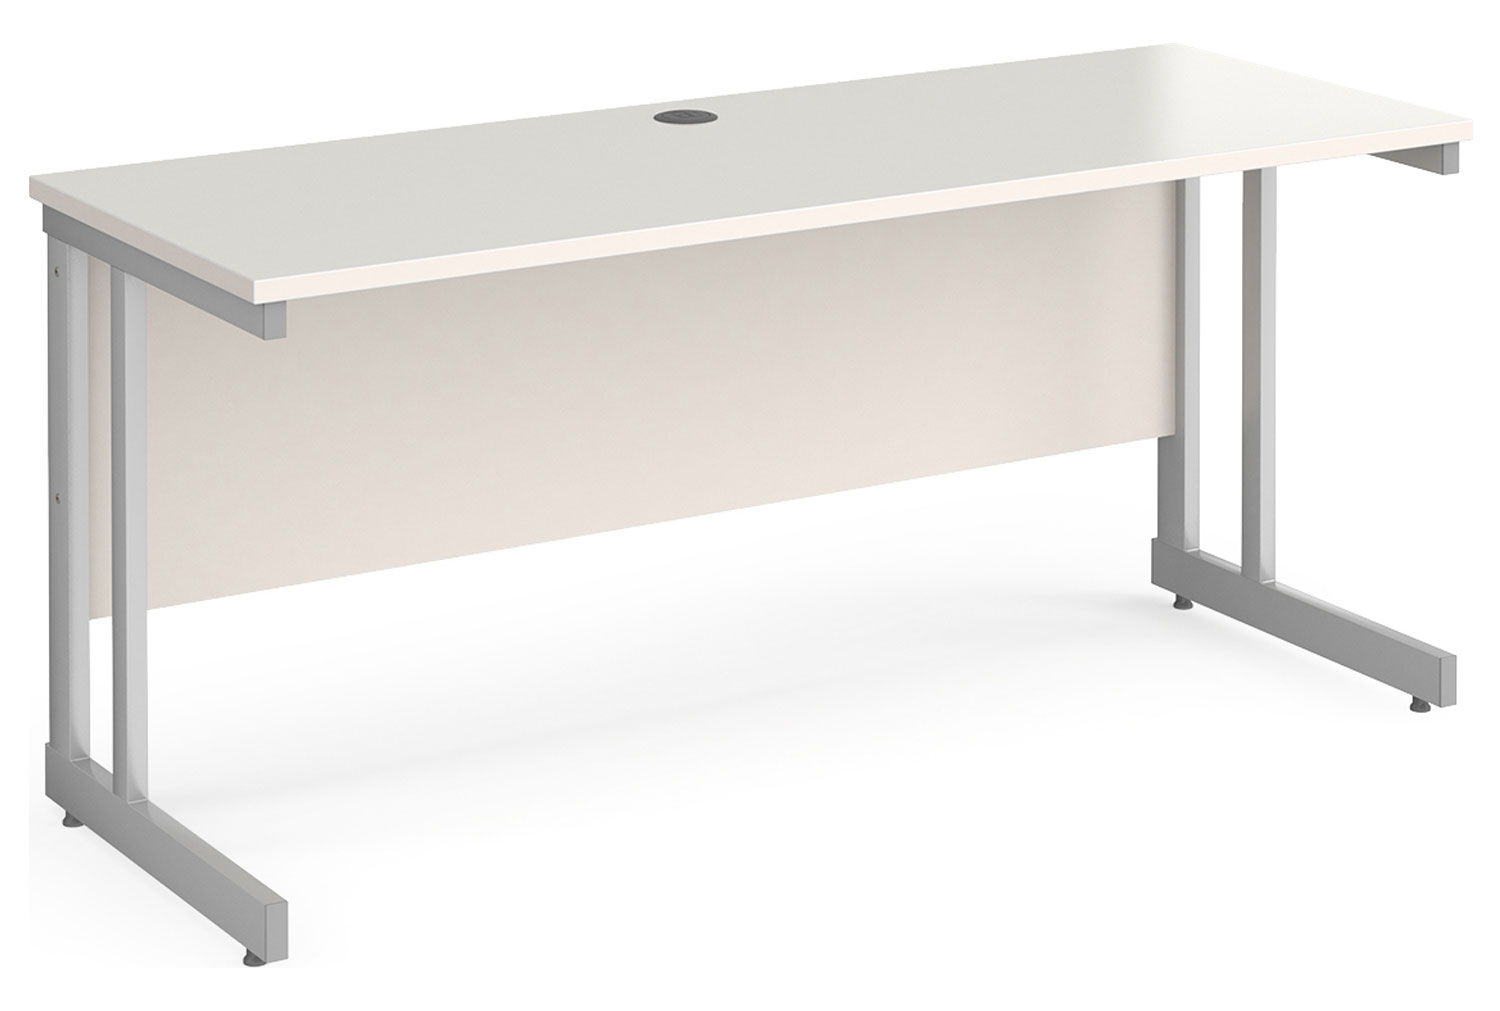 All White Double C-Leg Narrow Rectangular Office Desk, 160w60dx73h (cm)